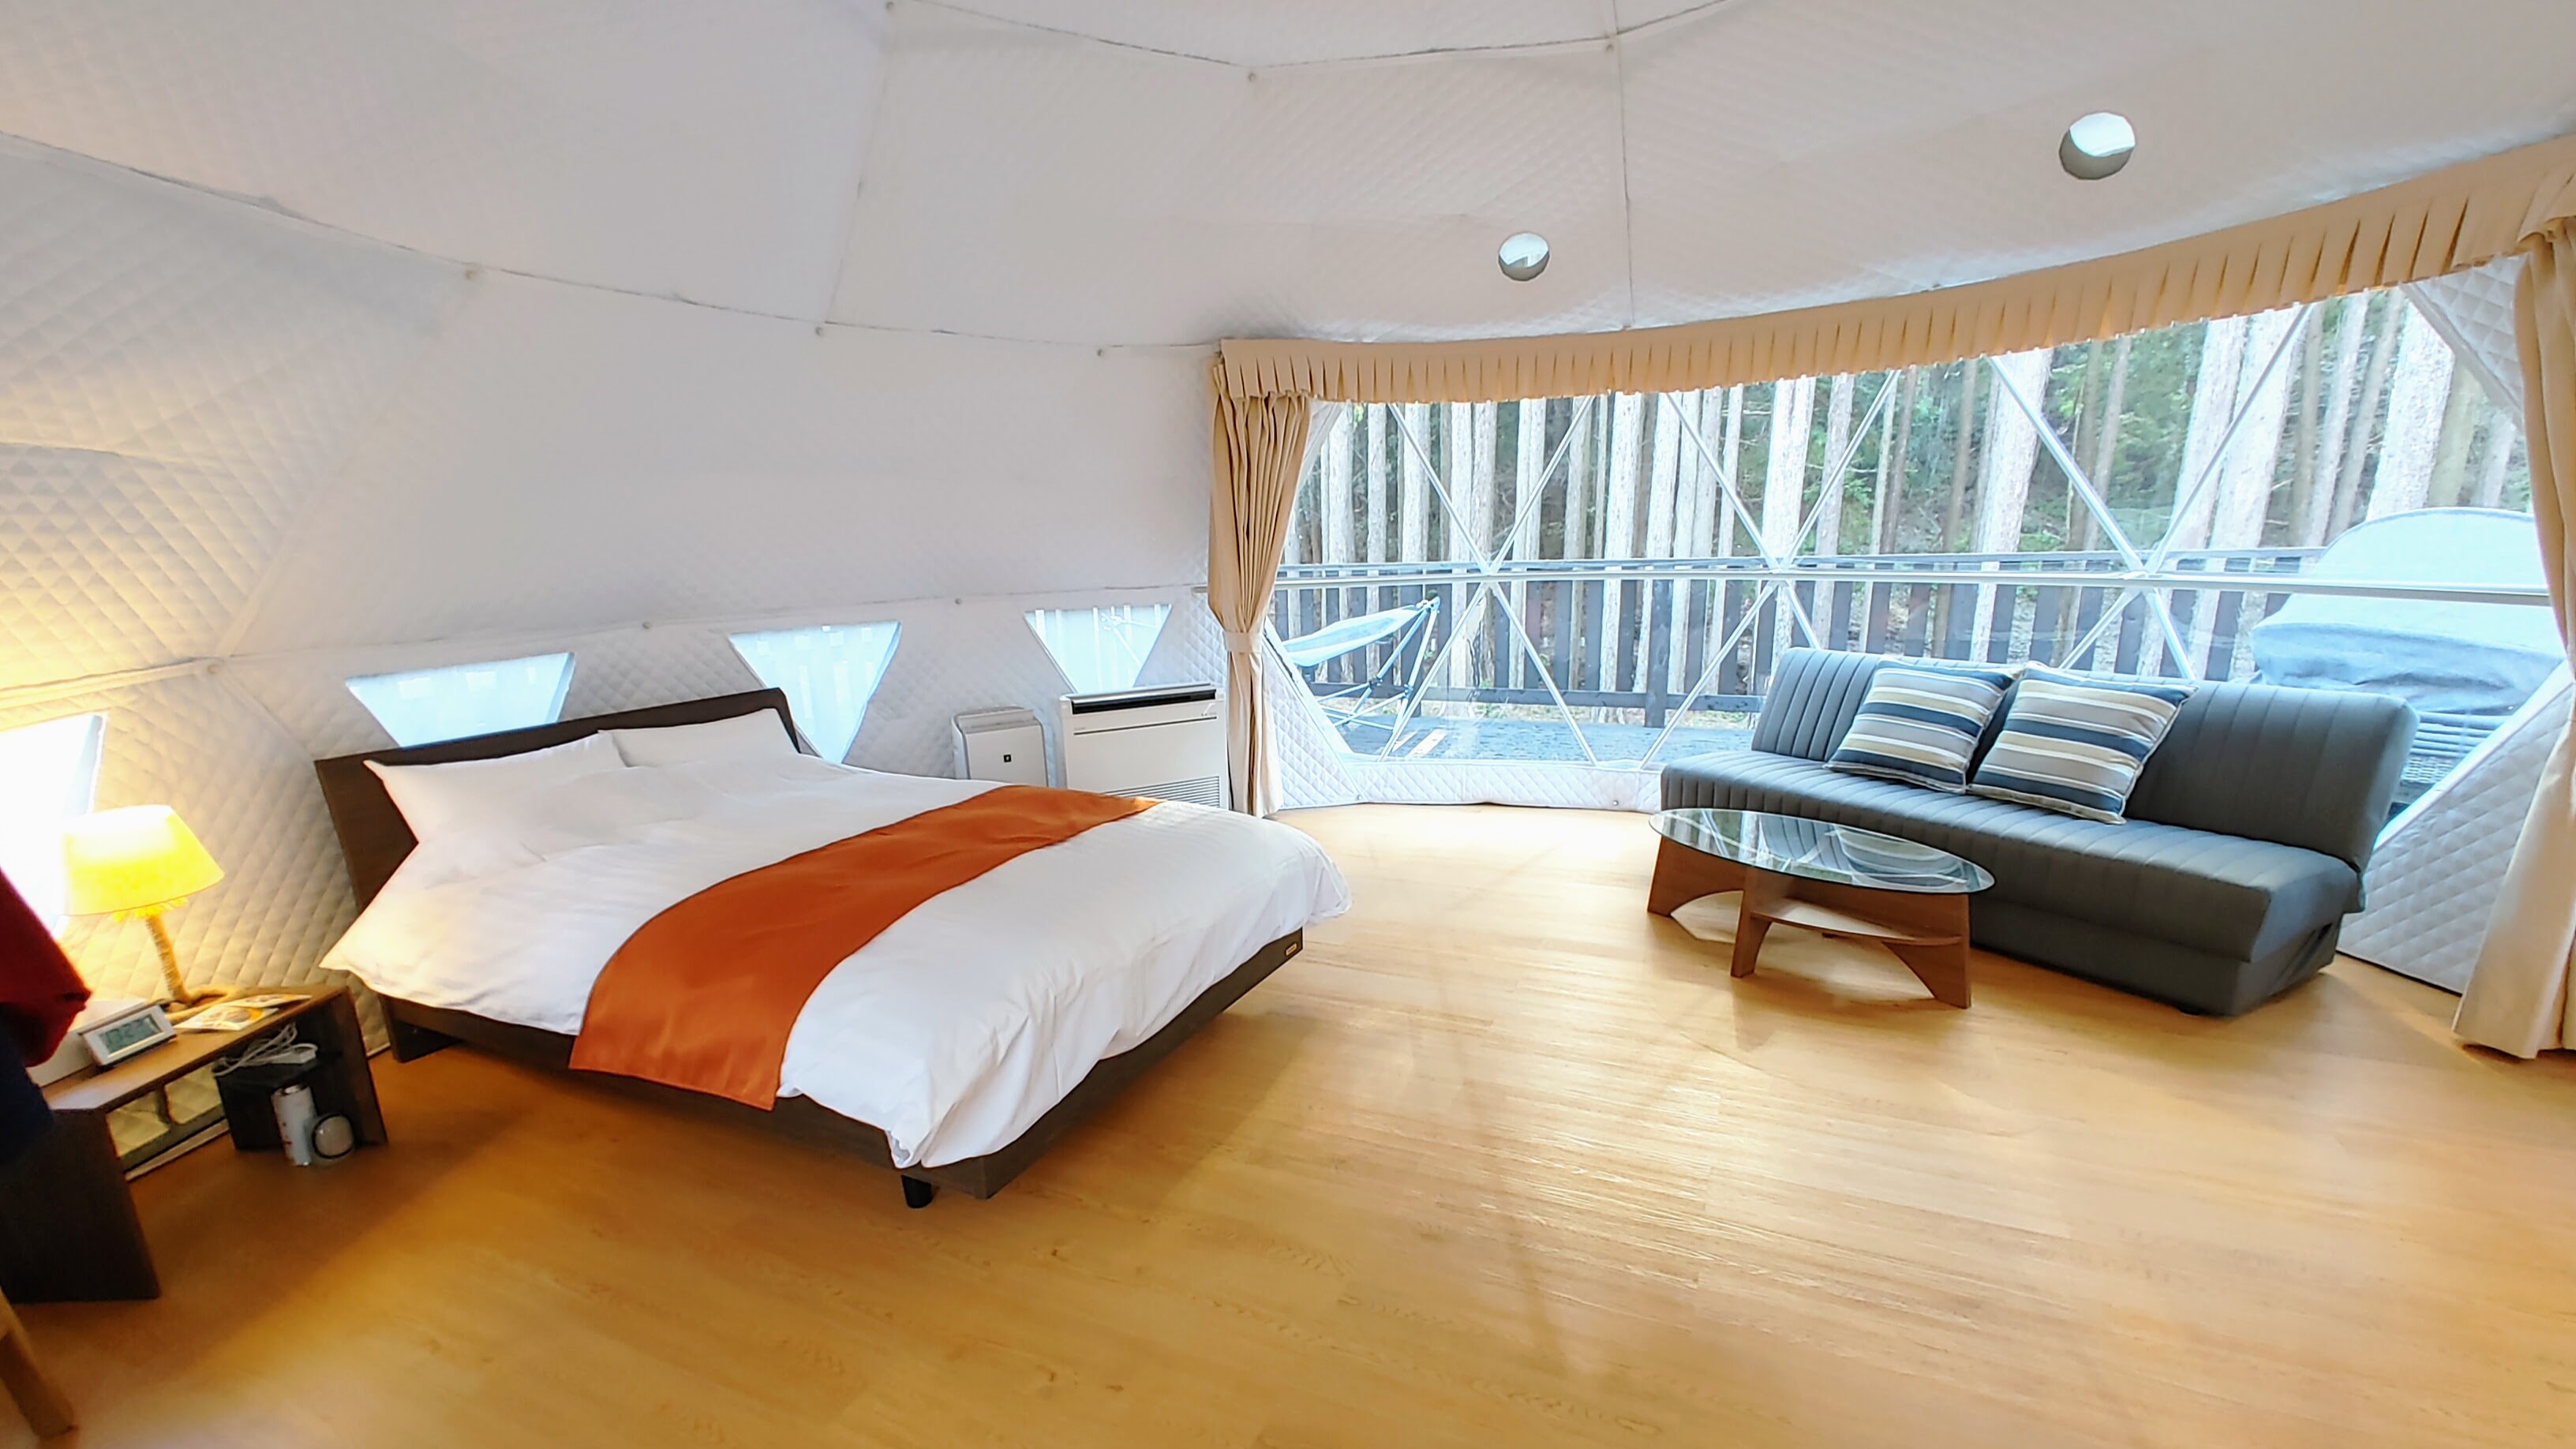 2つしかないベッド1台のテントは室内広々と使えます。スーツケース広げてもまだ余裕程度の広さあり